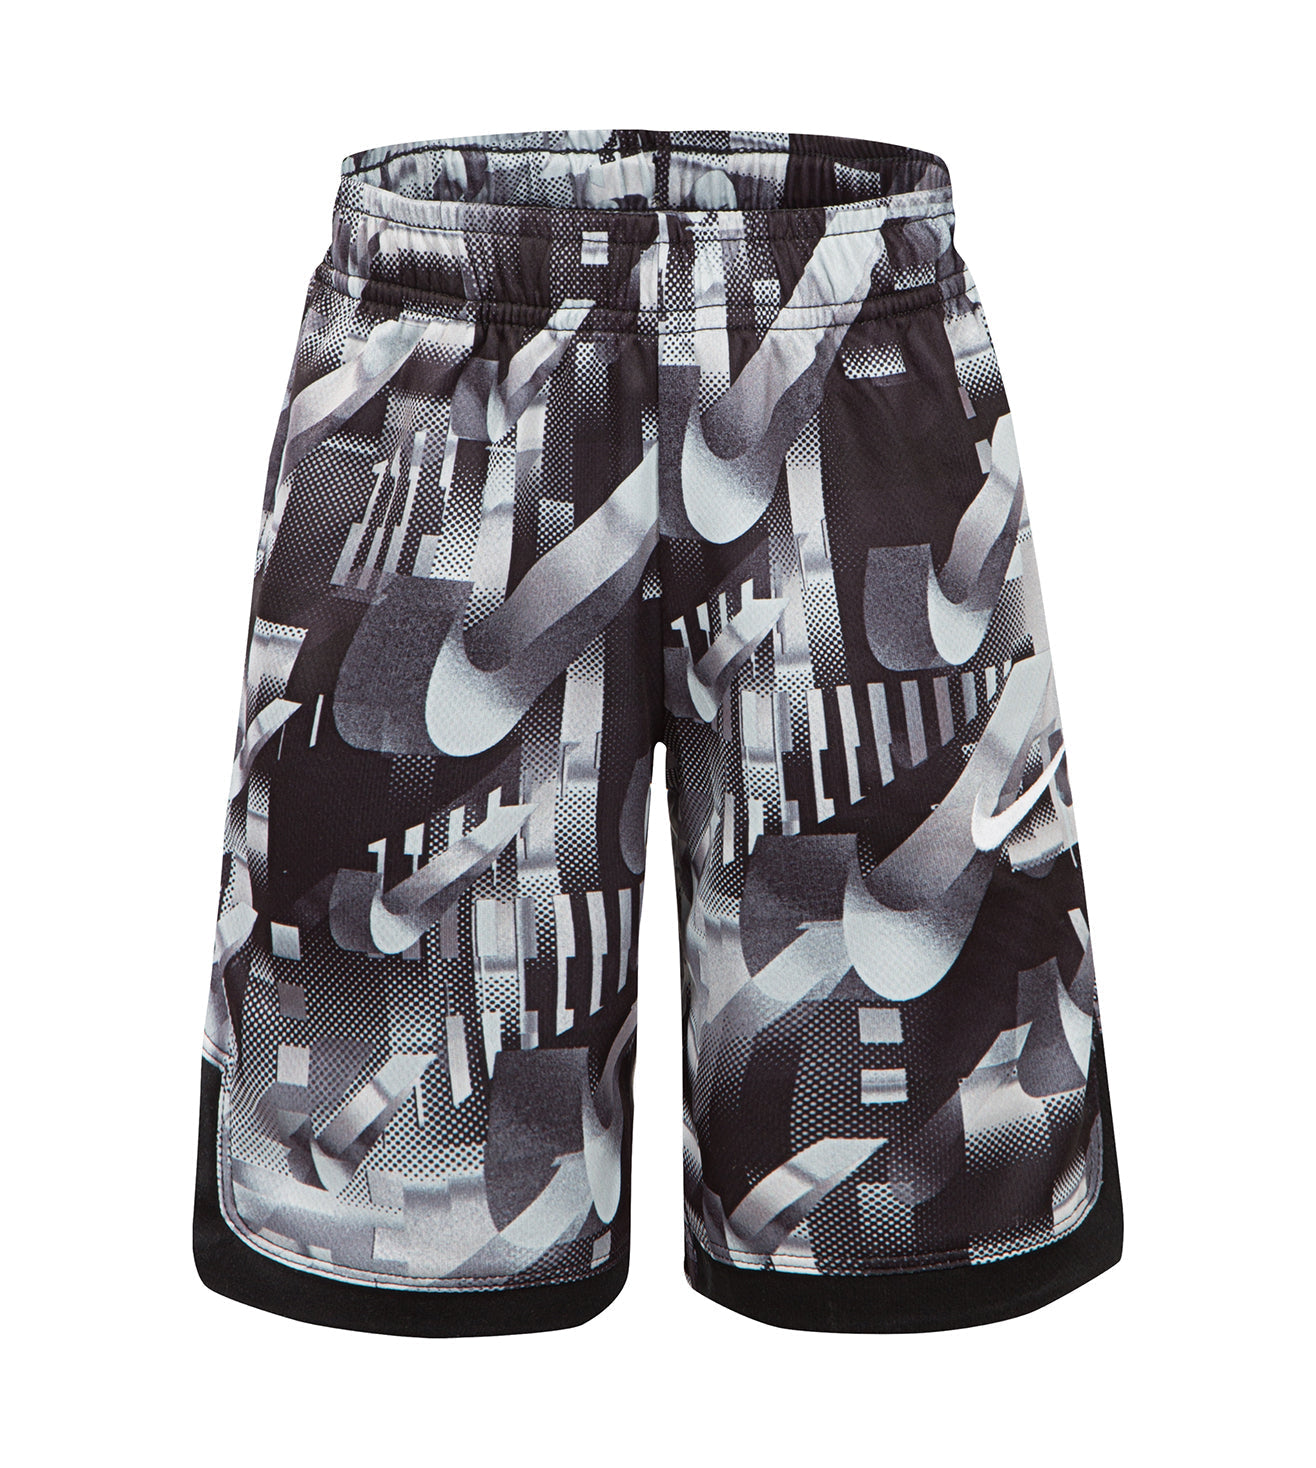 Nike Dri-FIT Shorts Shorts Nike   